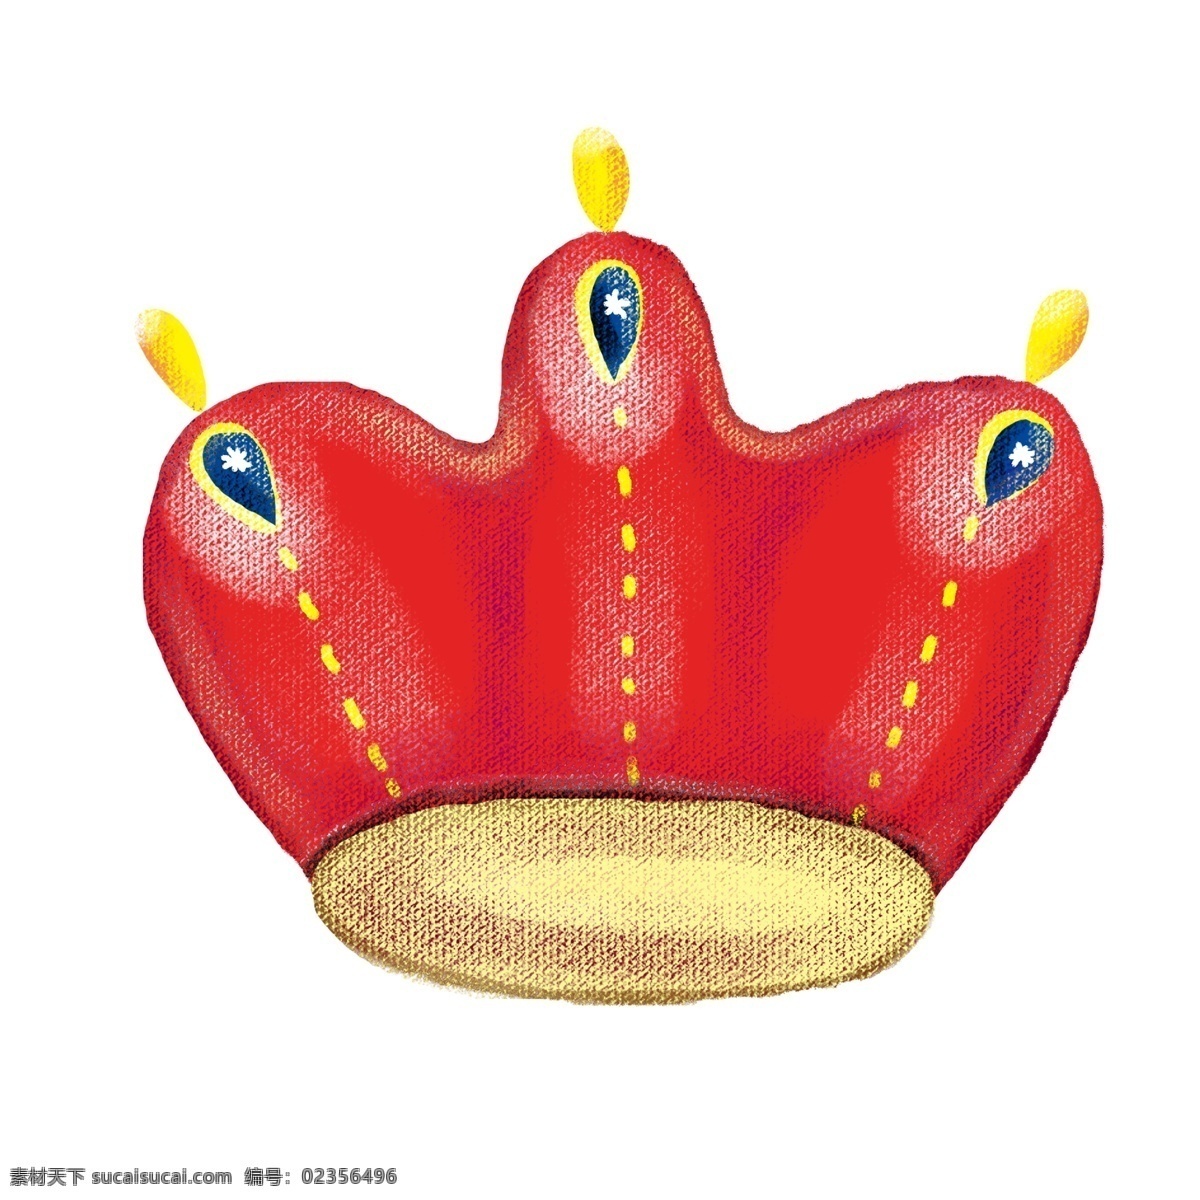 红色 贵族 皇冠 大红色 有气质 典雅 高贵 皇室 尊贵 至尊 国王 王后 王子 公主 身份象征 地位 珠宝 宝石 珍贵